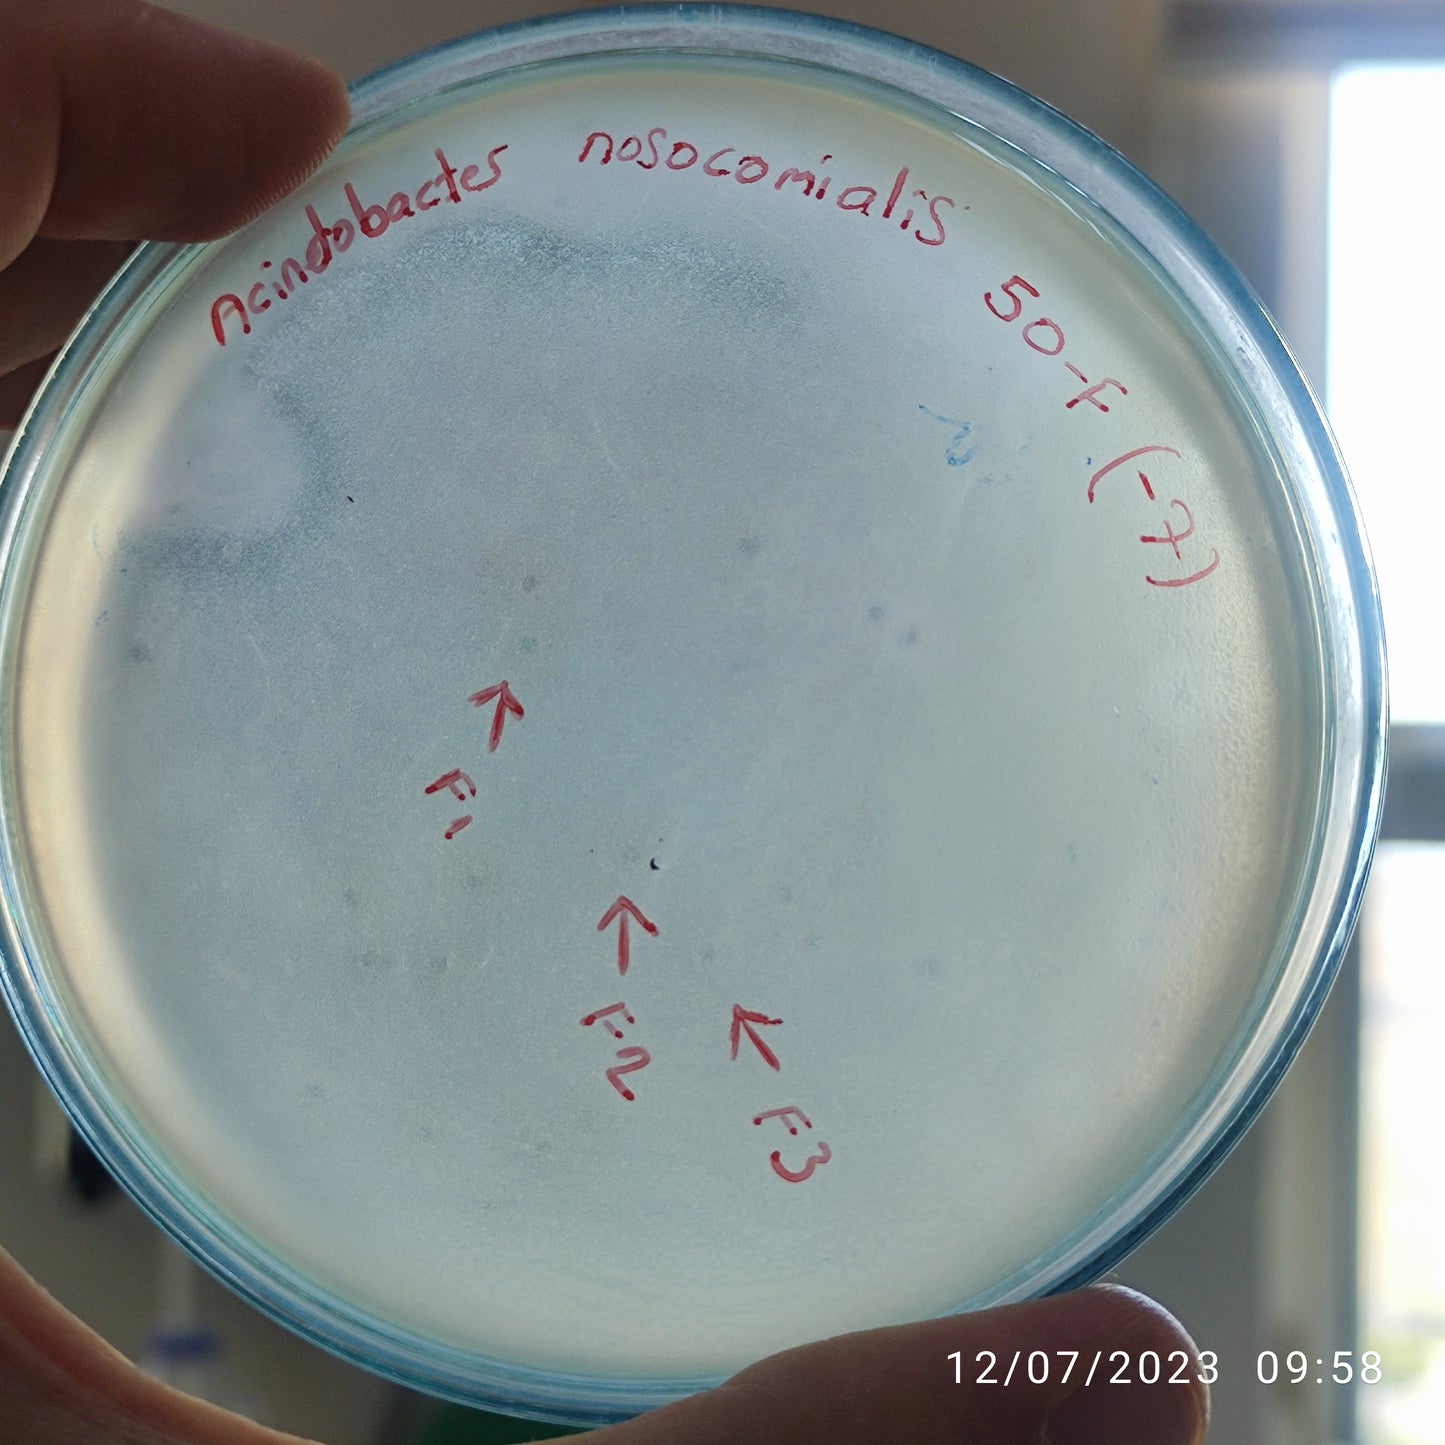 Acinetobacter nosocomialis bacteriophage 128050F